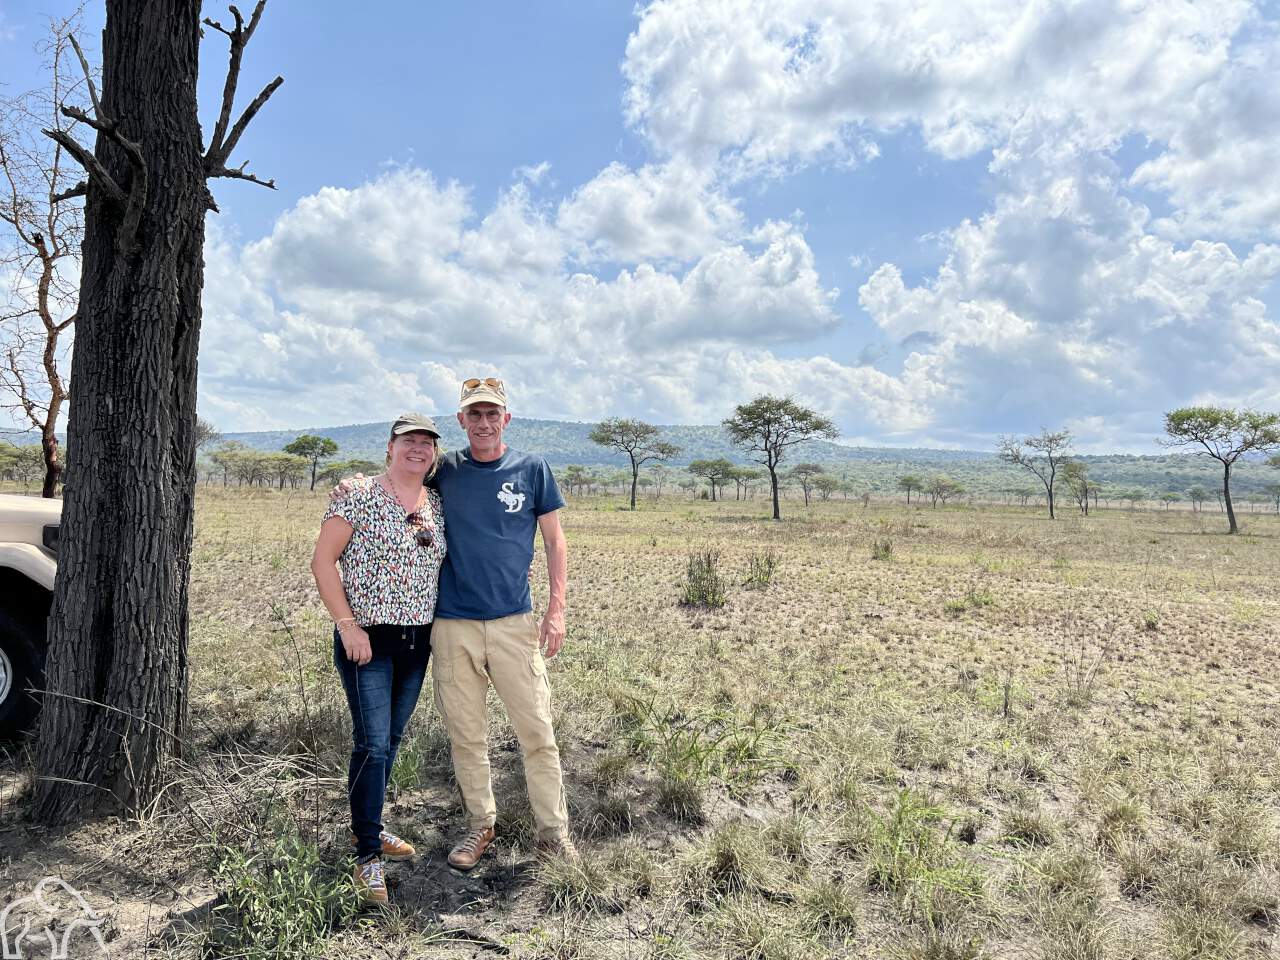 Over ons. Safari Tanzania. Eigenaren Martin en Wilma van Droomreis Tanzania tijdens een inspectiereis staand bij een boom op de vlaktes van de Serengeti